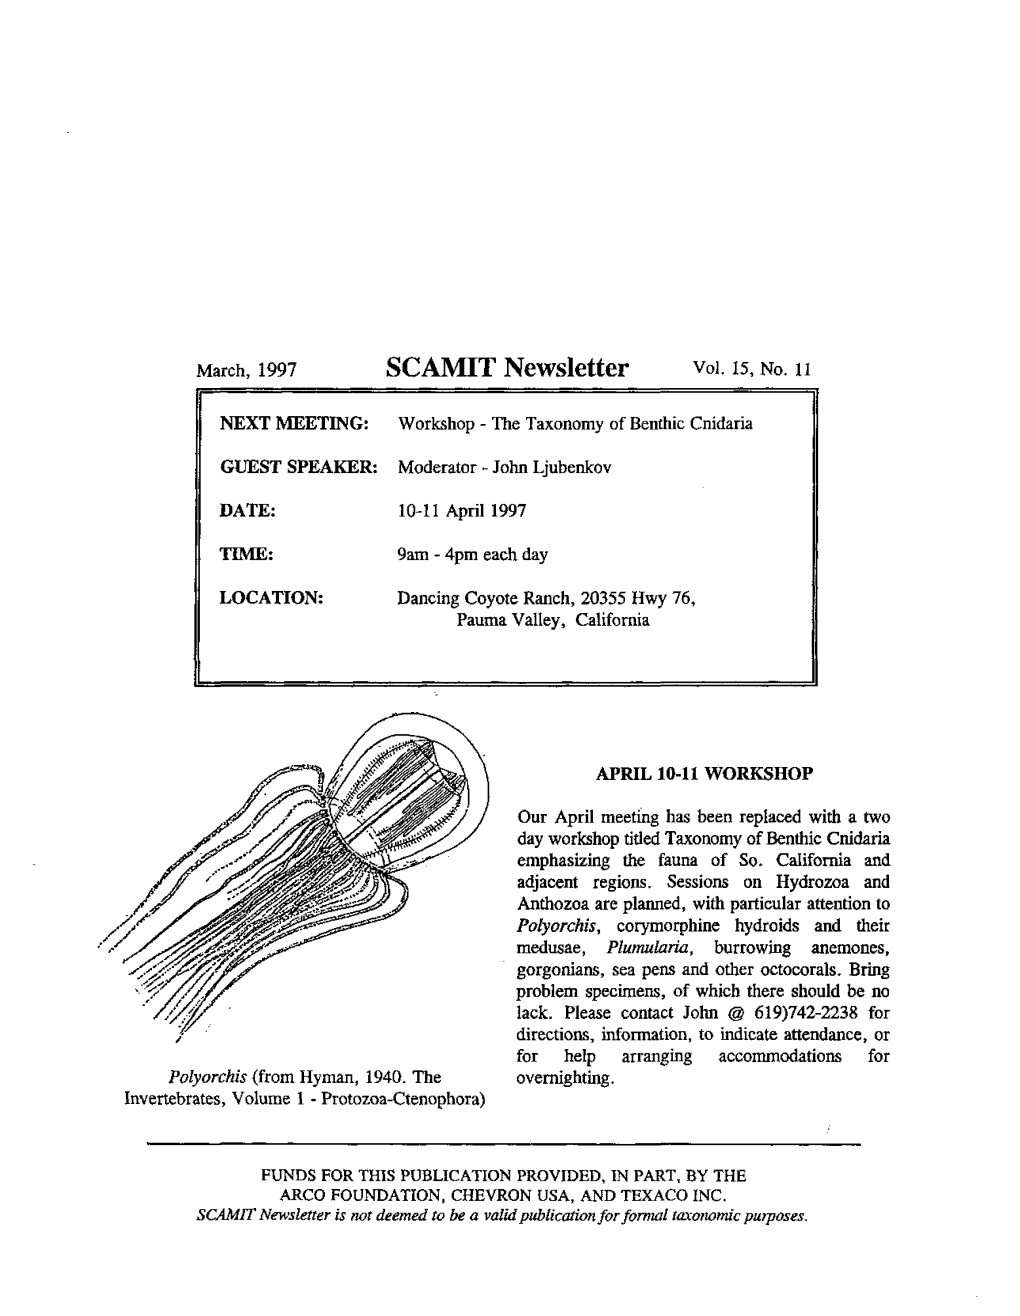 SCAMIT Newsletter Vol. 15 No. 11 1997 March